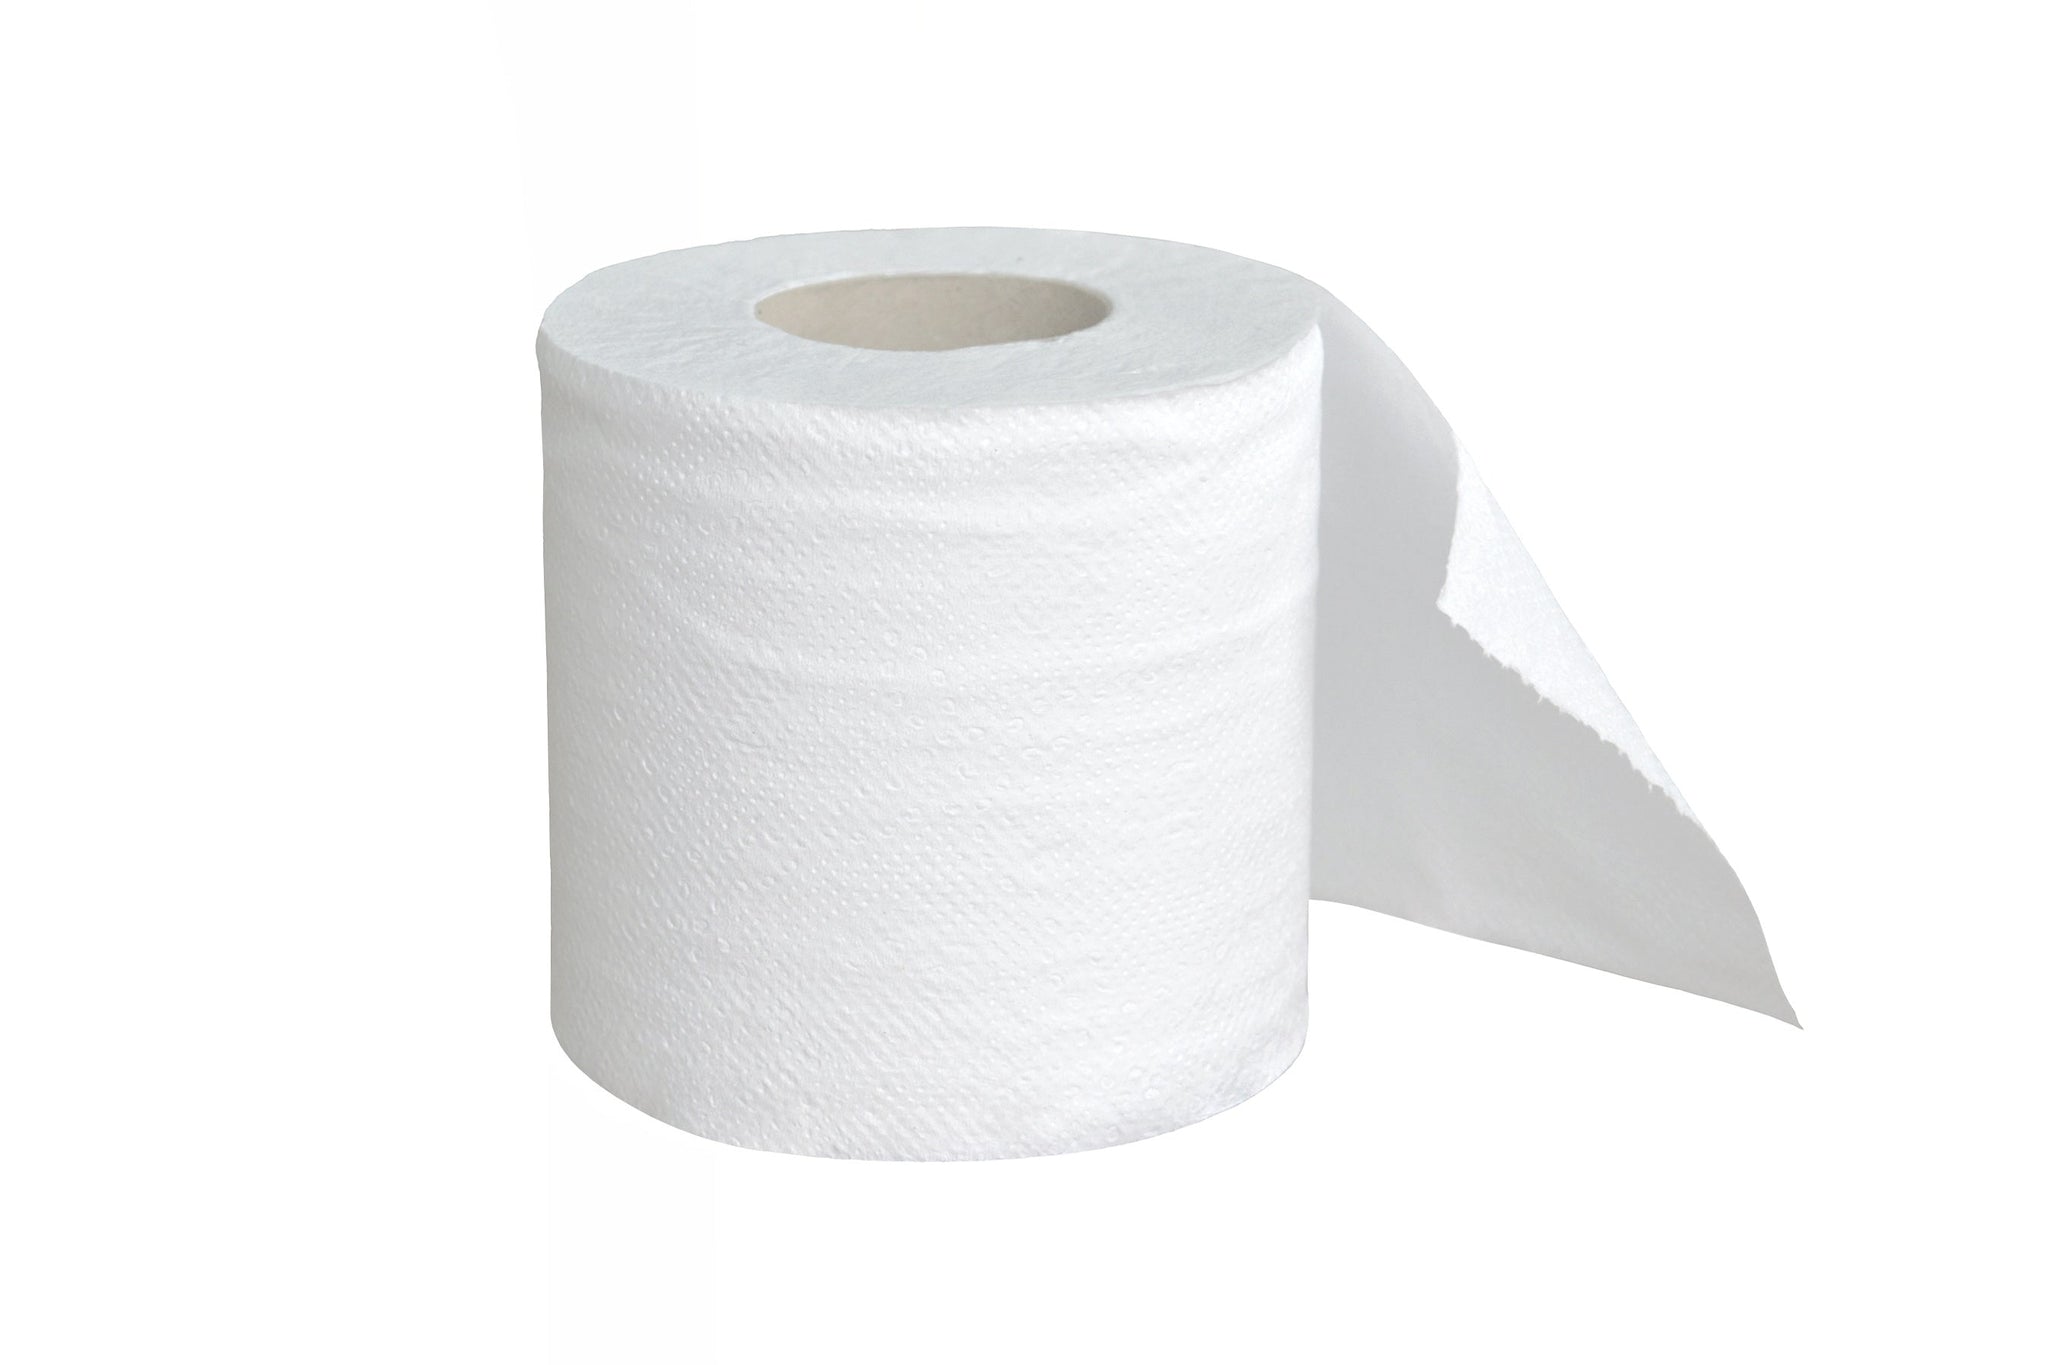 tah>Tiare Maohi Toilet Paper 4 rolls